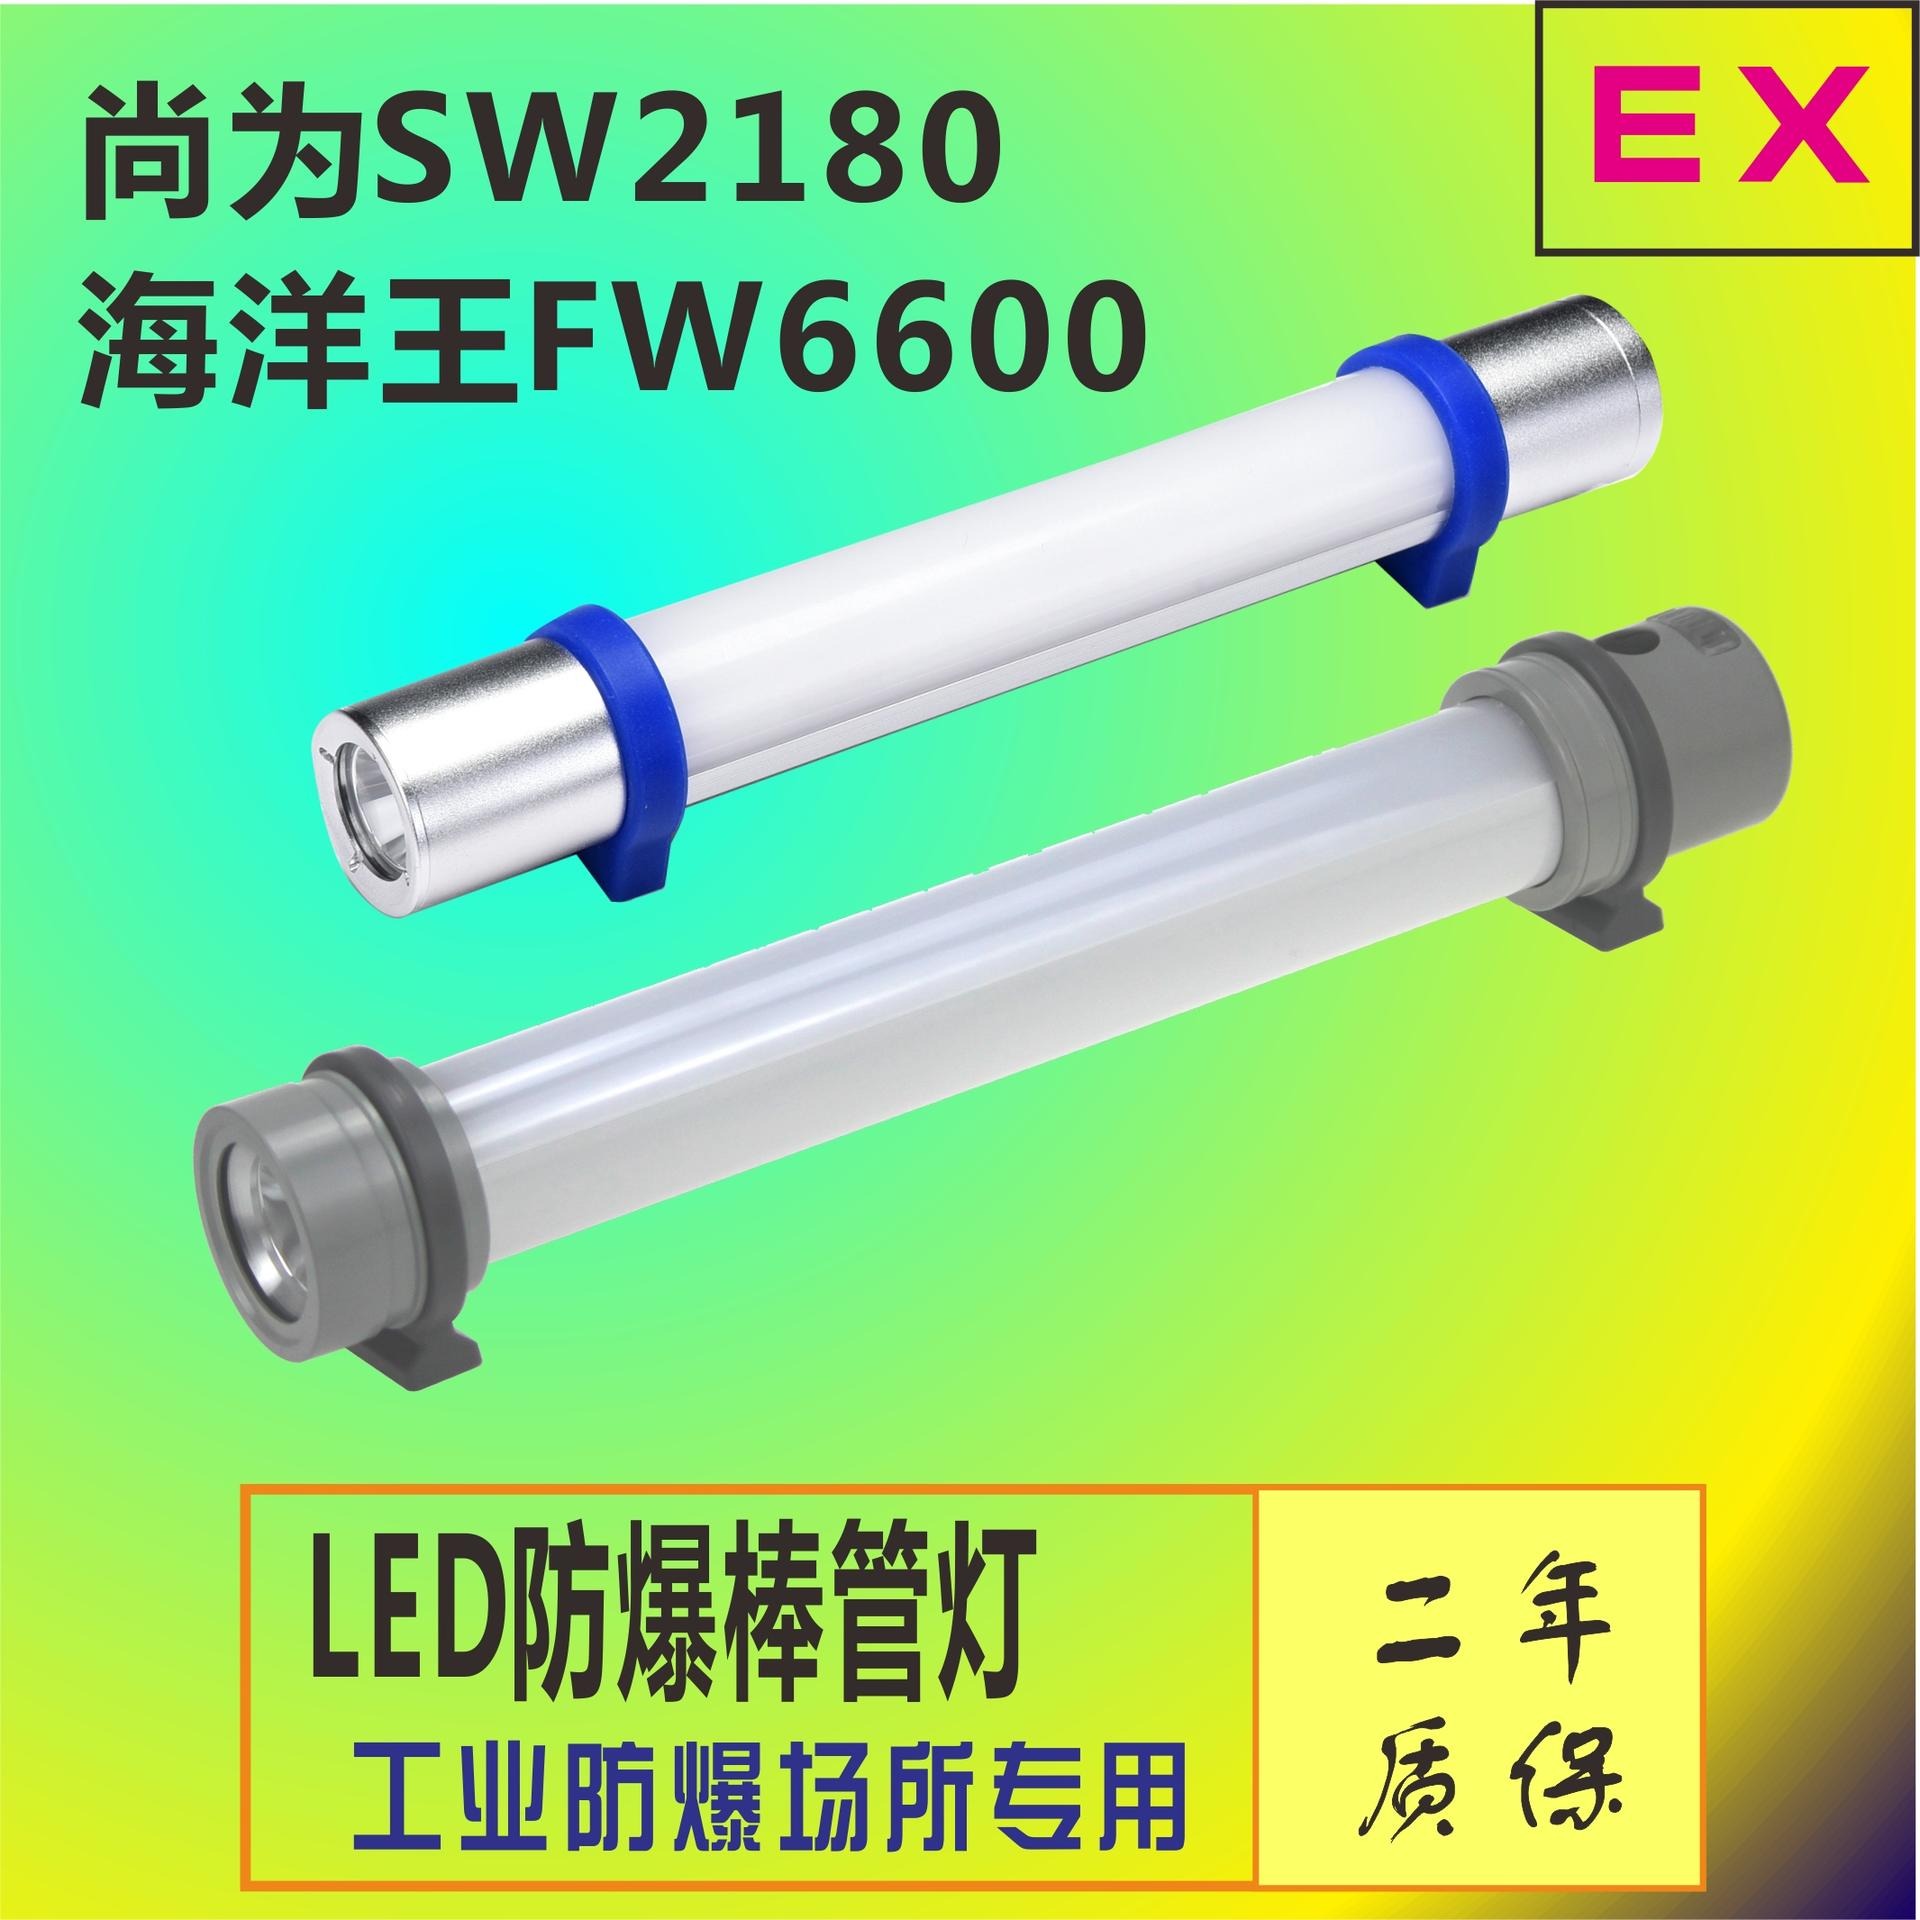 尚为SW2180LED多功能防爆棒管灯 磁力吸附强光应急警示灯 夜间户外应急棒管灯